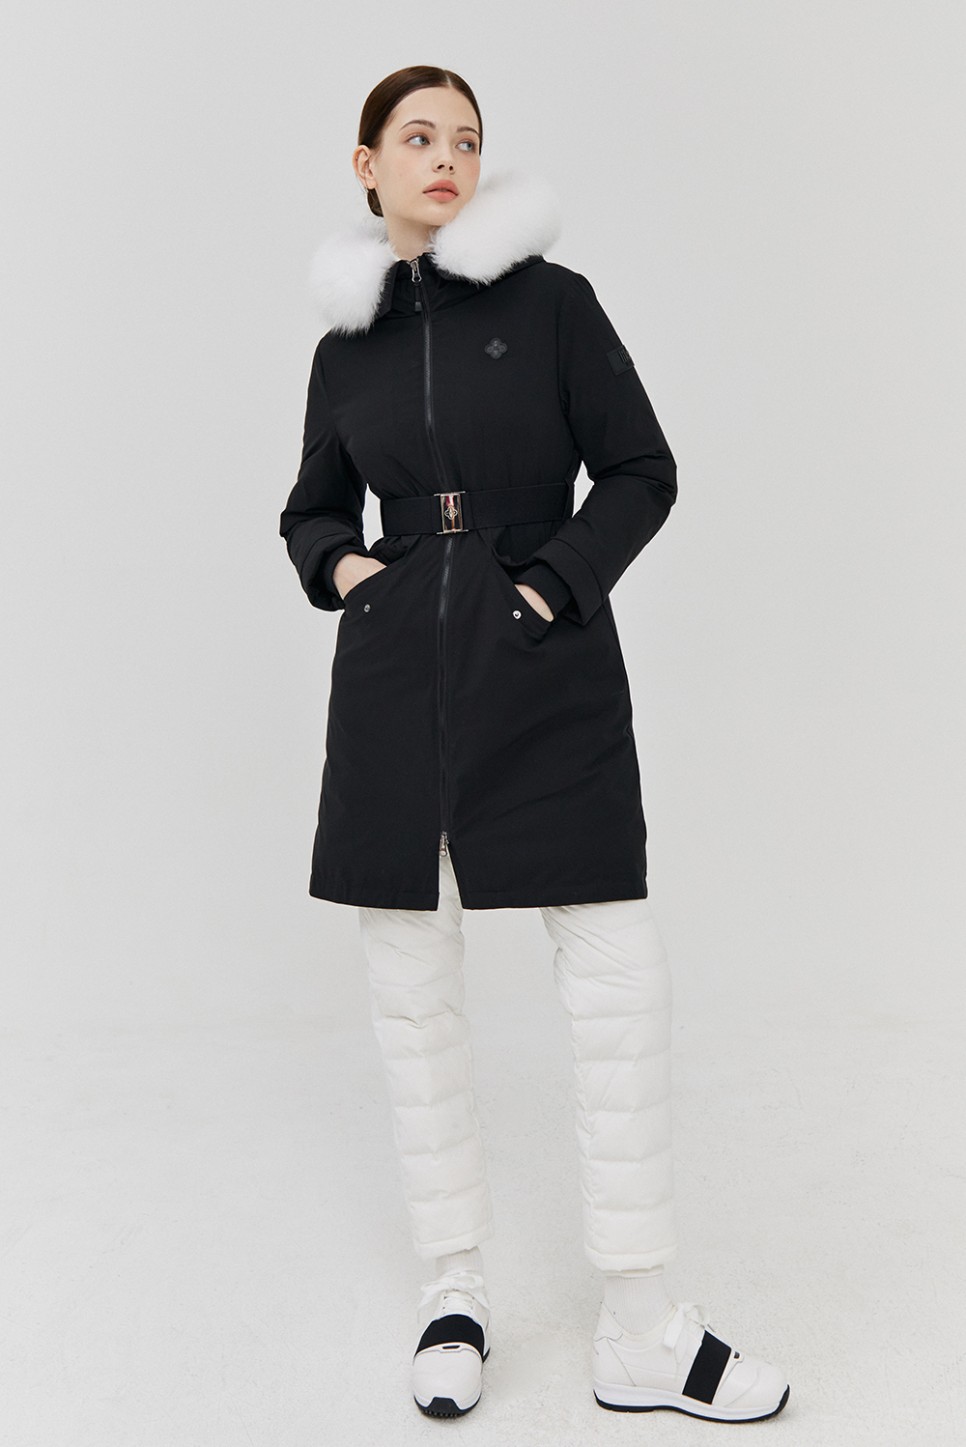 릭크 골프웨어 인스타그램 임수향 골프옷 정보 겨울 라운딩 코디 하기 좋아!